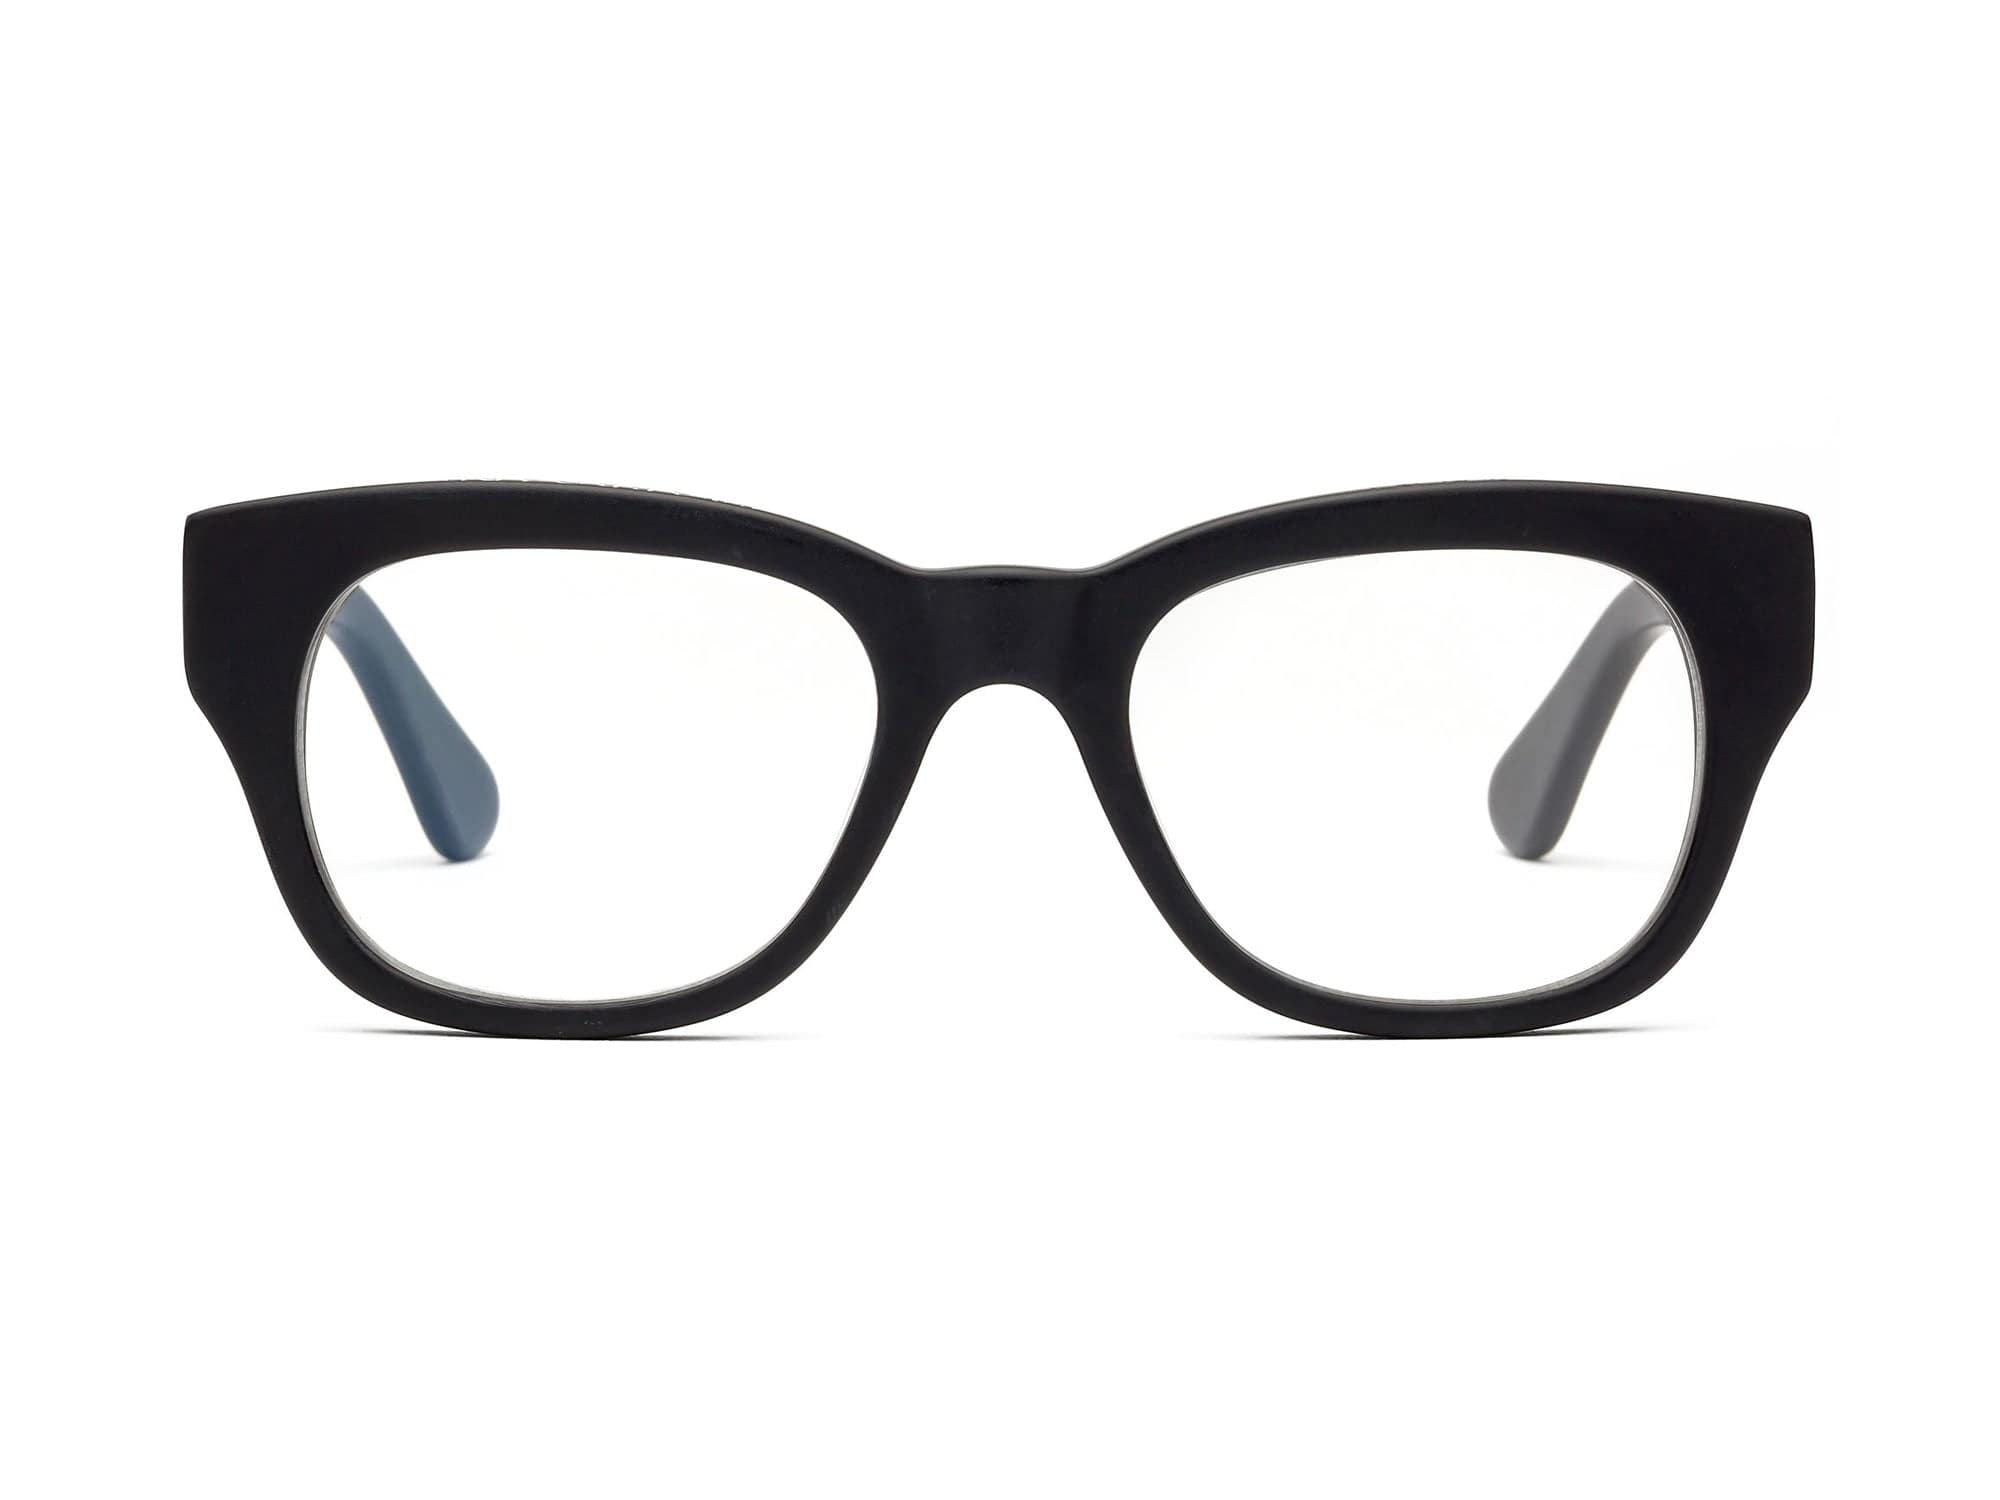 5 Best Port Glasses (Features, Dimensions, Serving Ideas)